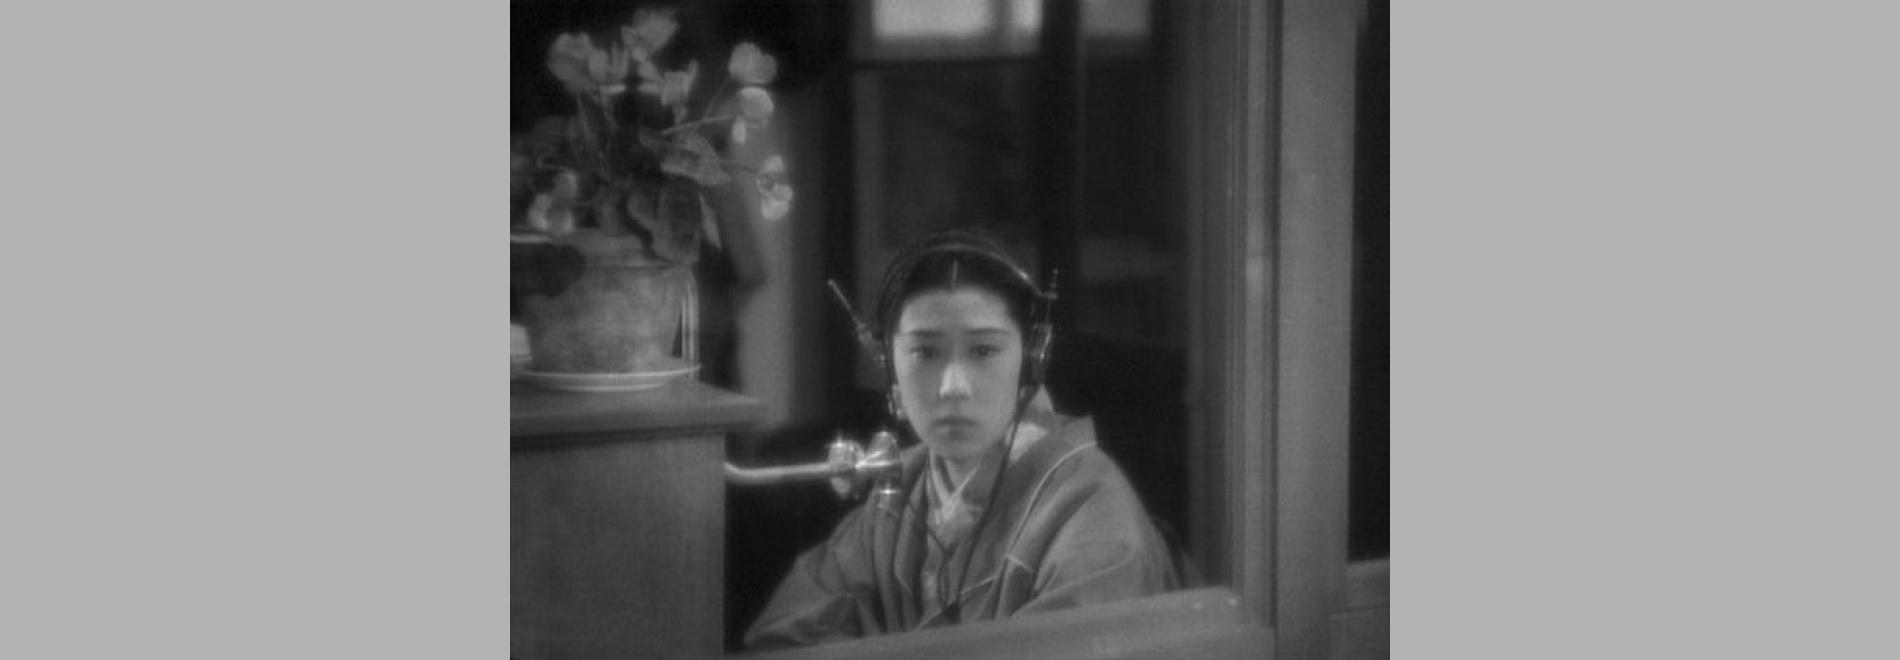 Naniwa erejî / L'elegia de naniwa (Kenji Mizoguchi, 1936)